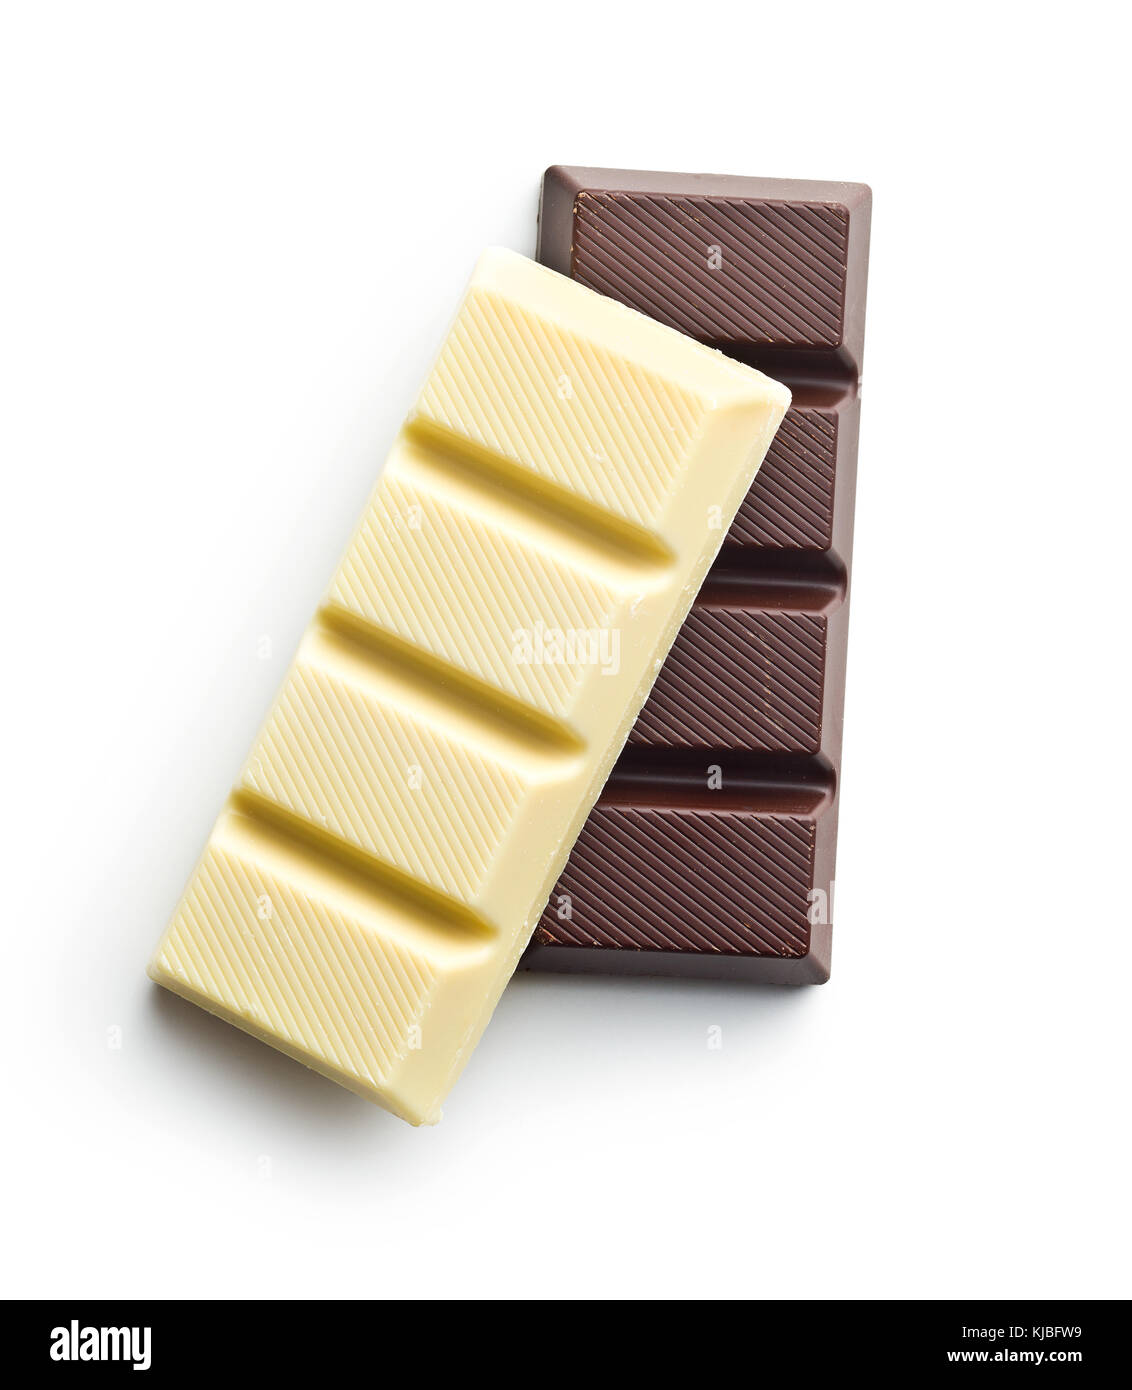 barra-de-chocolate-blanco-y-negro-sobre-fondo-blanco-aisladas-vista-desde-arriba-kjbfw